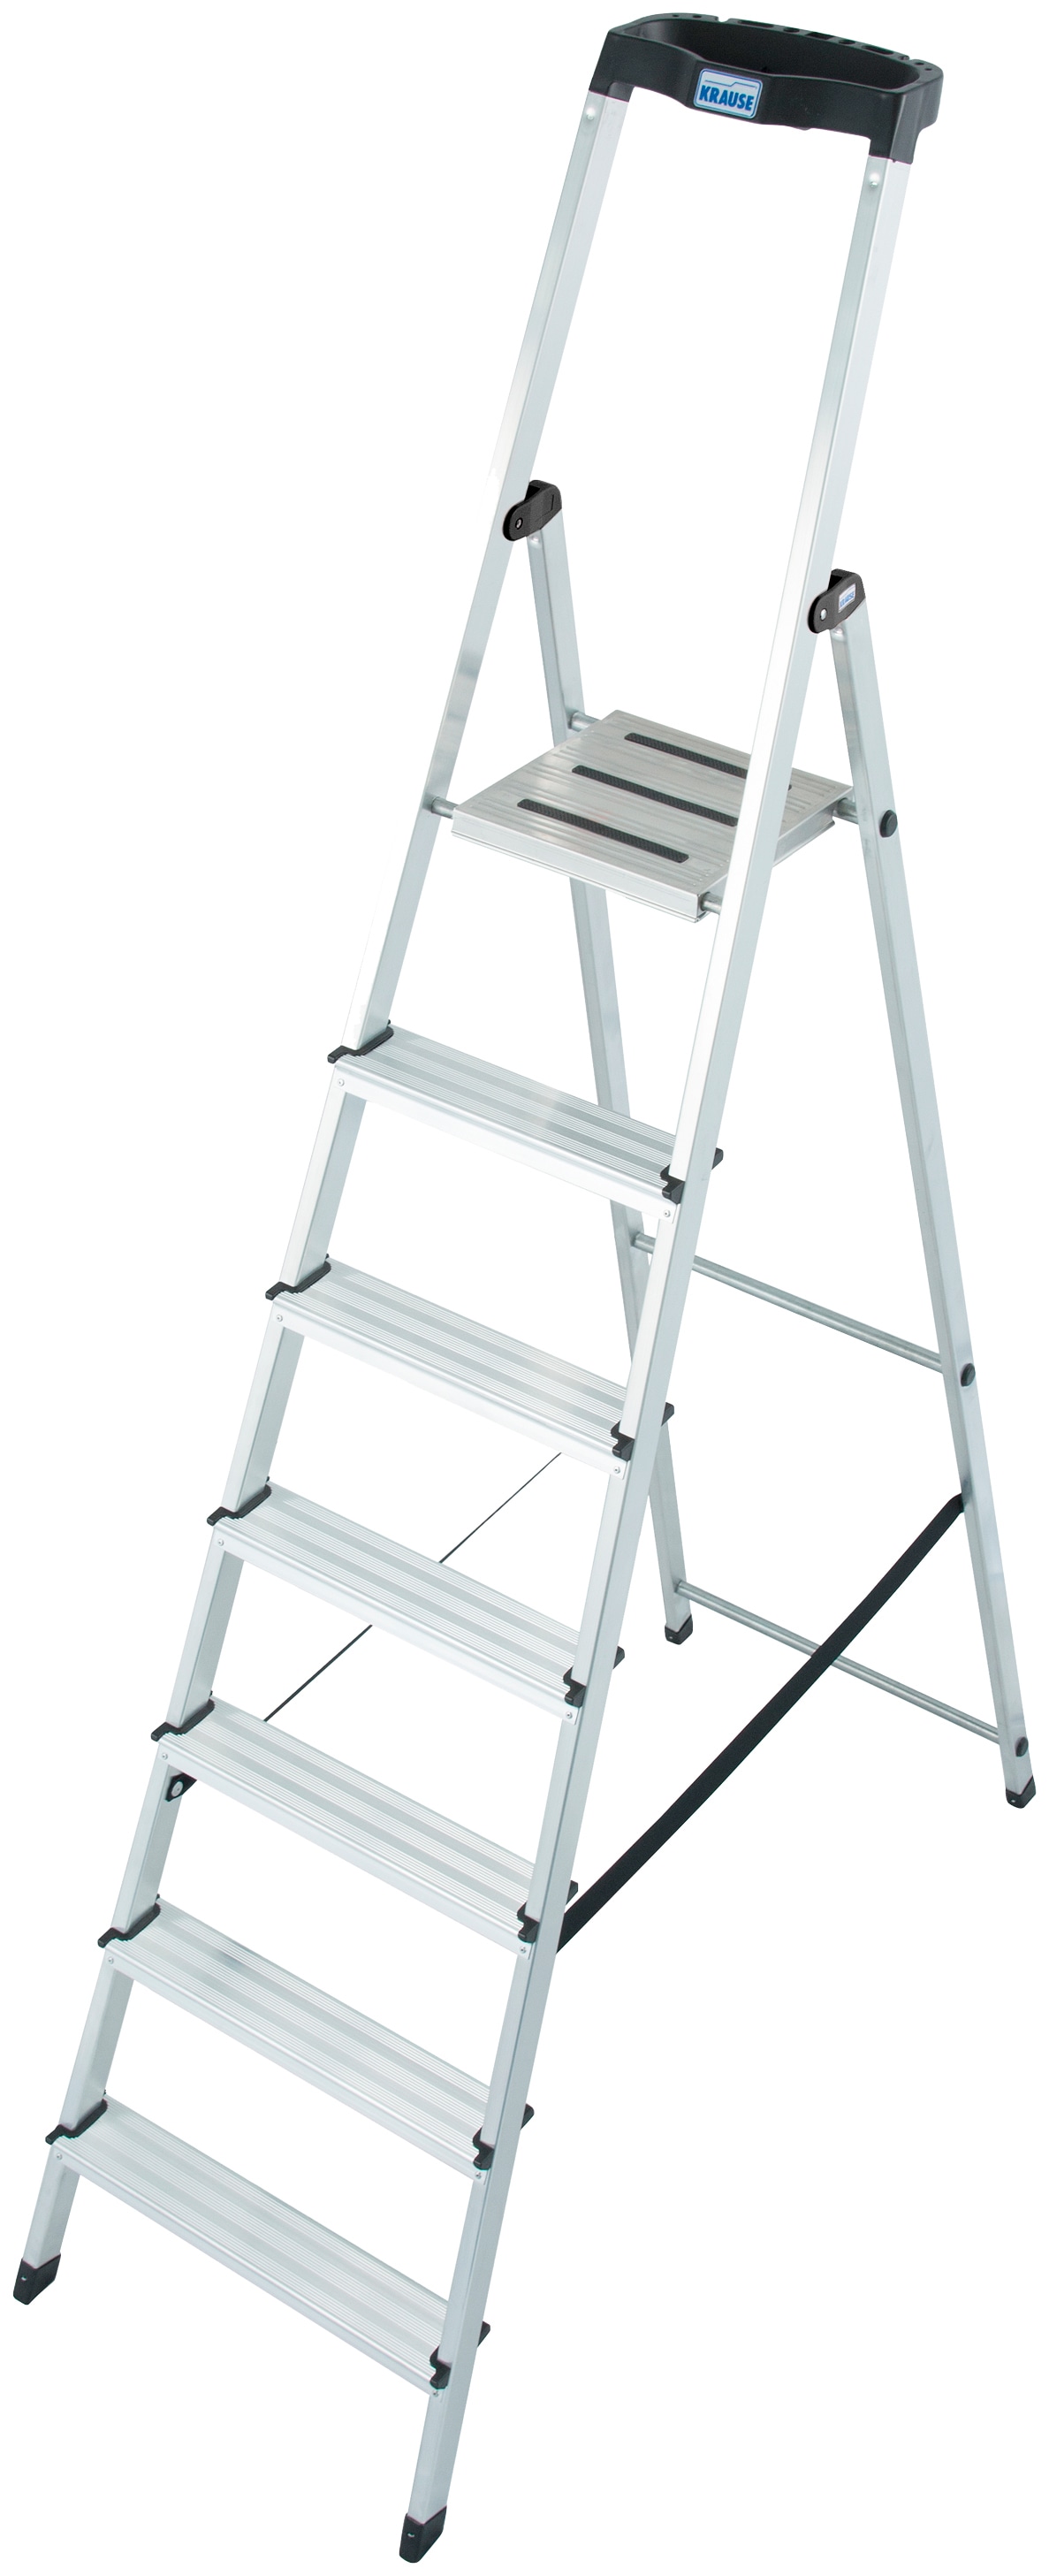 KRAUSE Stehleiter »Safety«, Aluminium, 1x7 Stufen, Arbeitshöhe ca. 350 cm